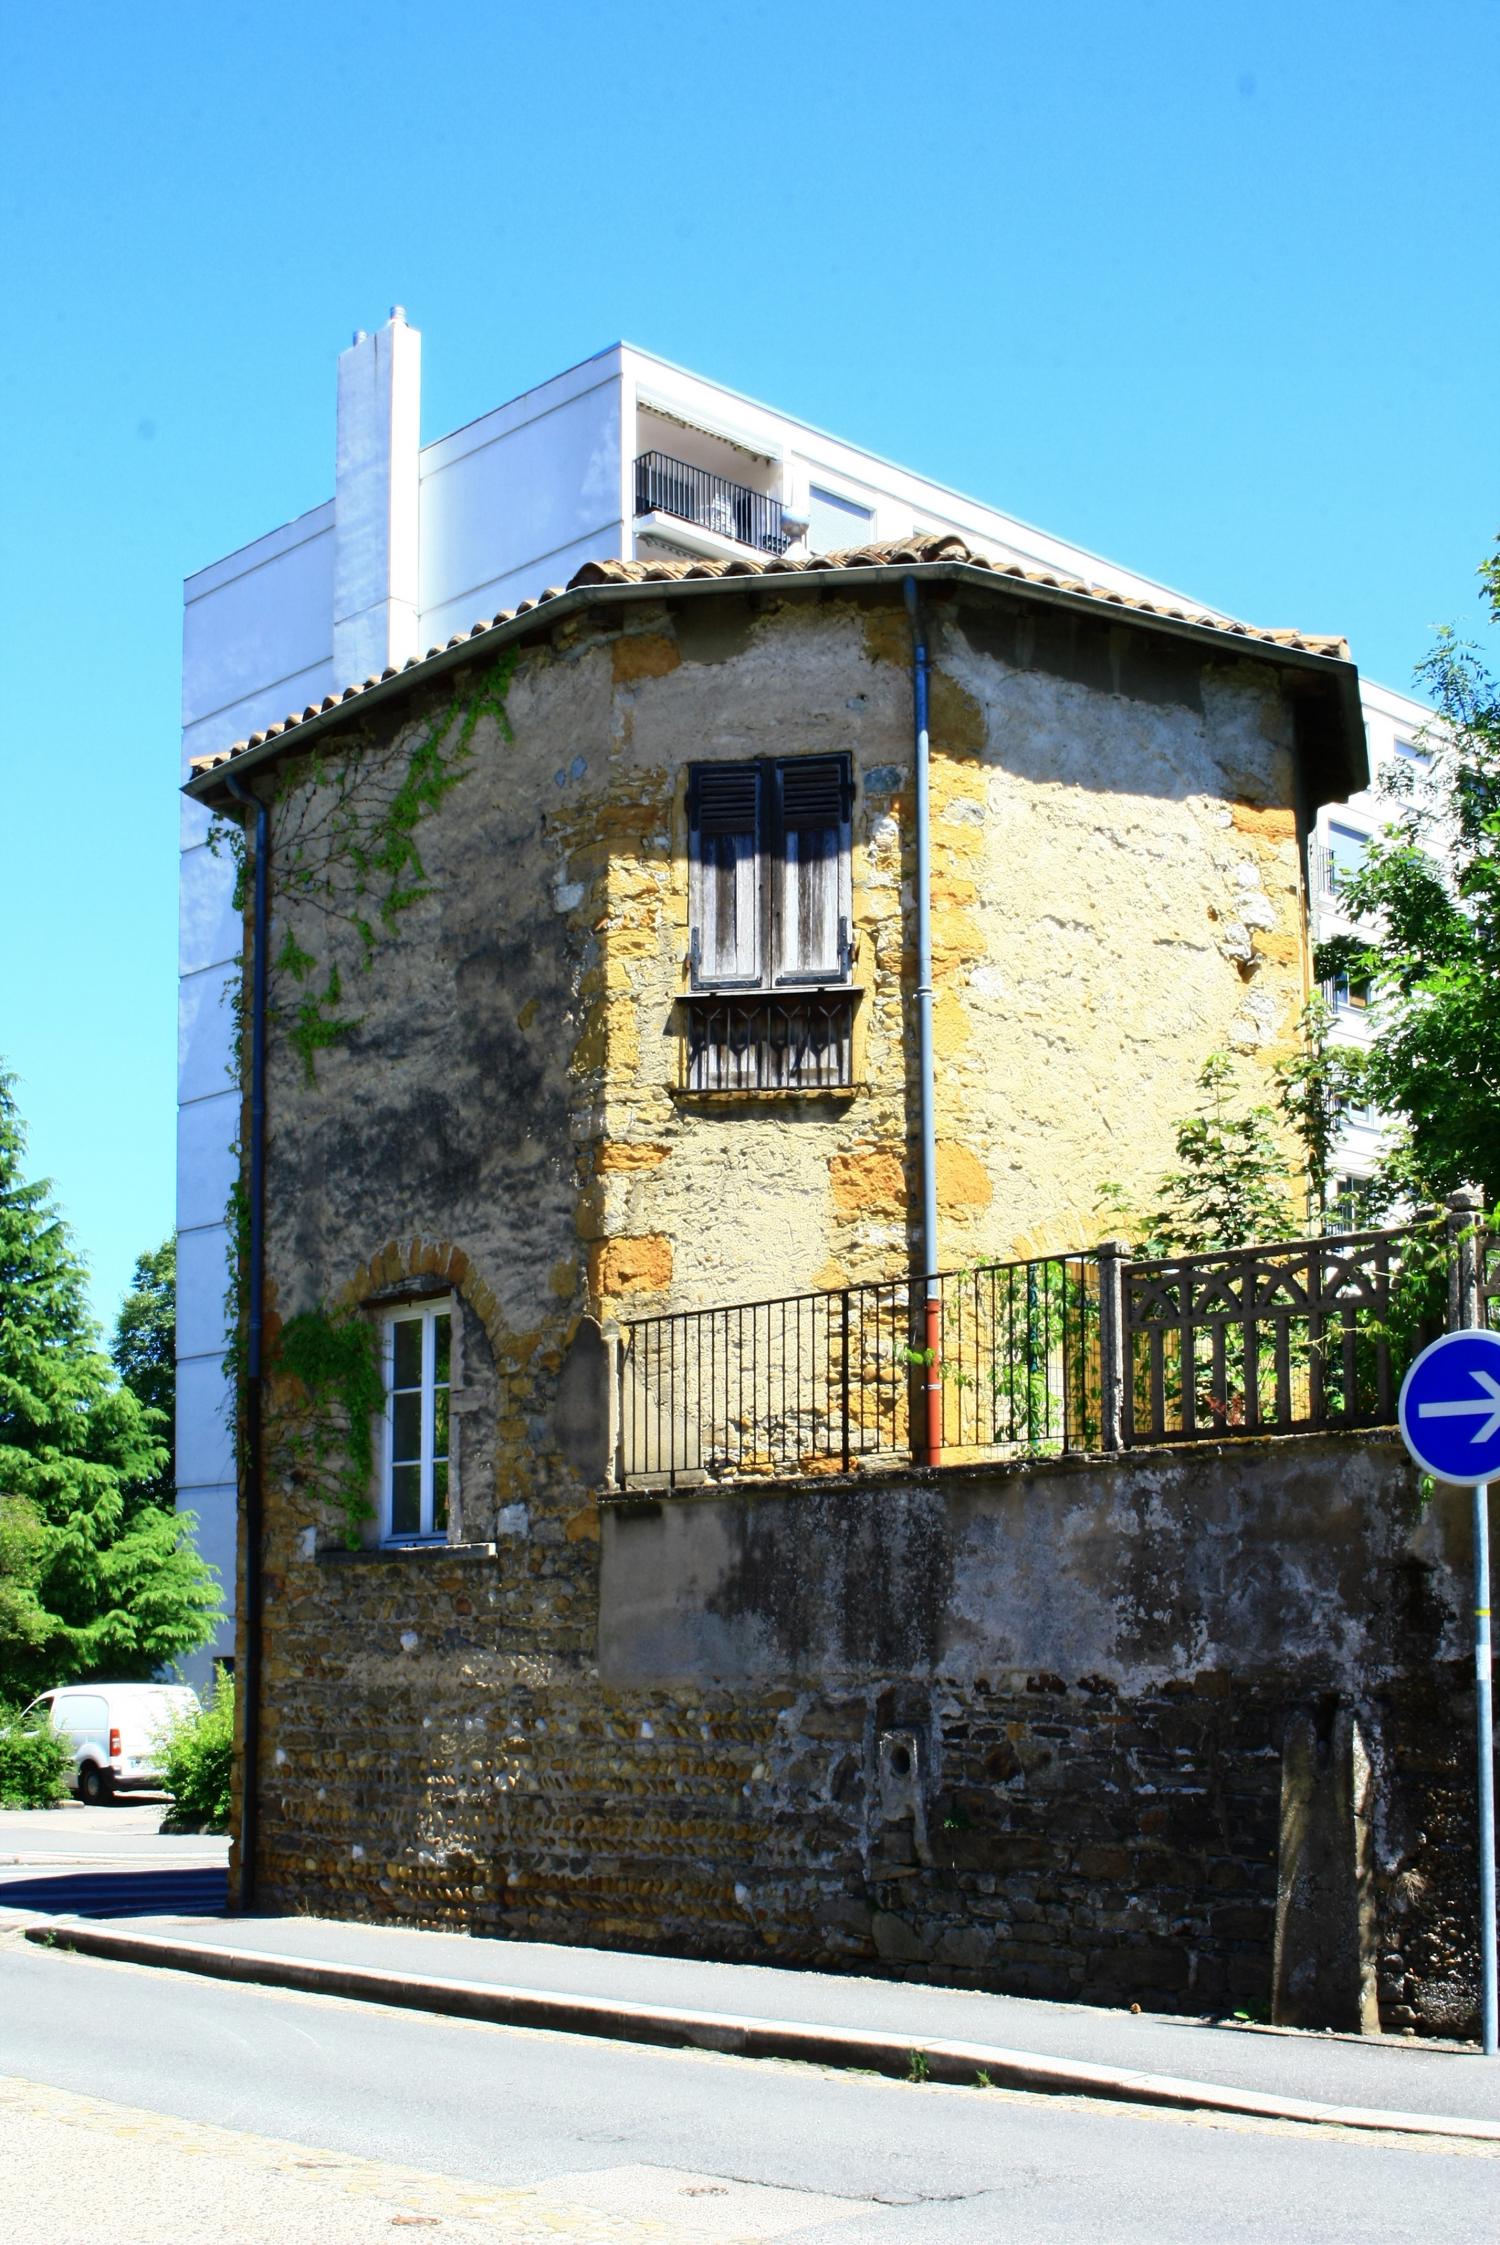 Tour octogonale, rue Jean-Baptiste Simon, Sainte-Foy-lès-Lyon 